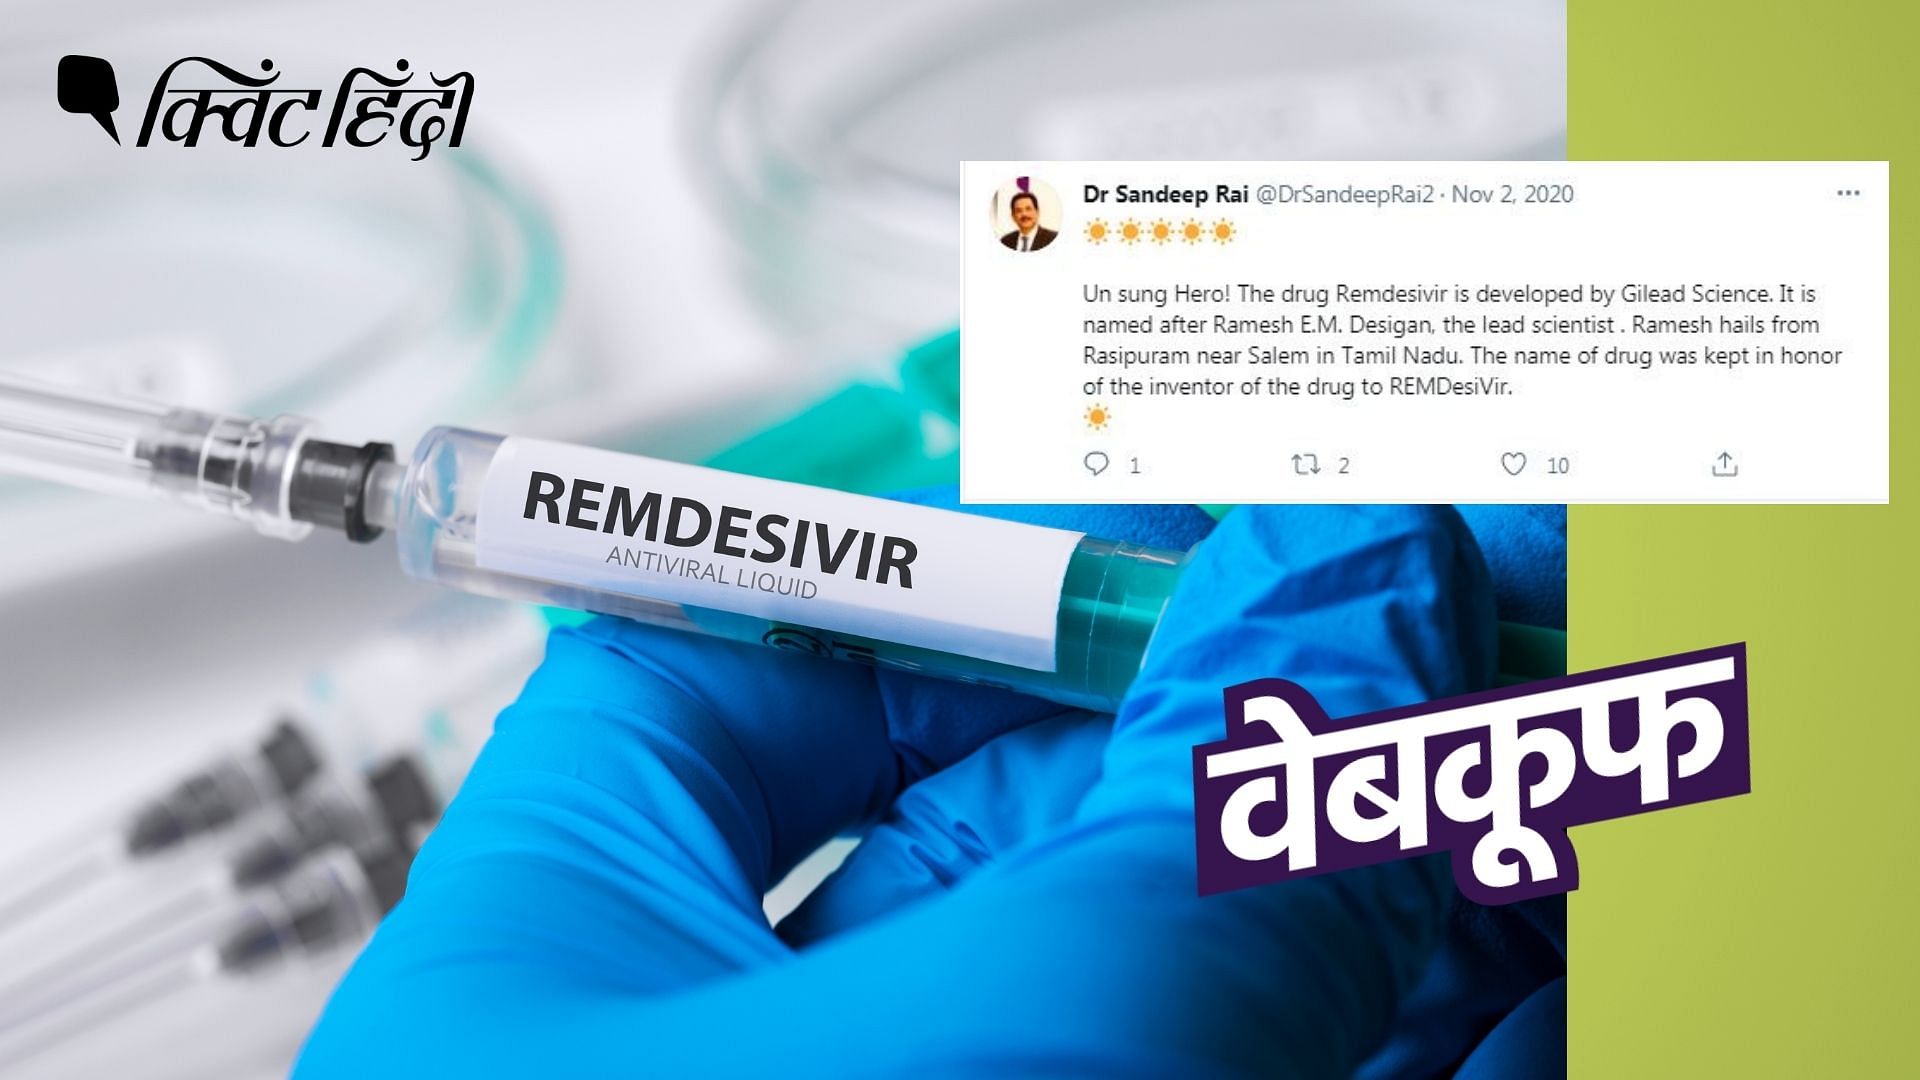 रेमडिसिवर बनाने वाली कंपनी ने बताया कि&nbsp; भारतीय वैज्ञानिक के नाम पर दवा का नाम नहीं रखा गया है.